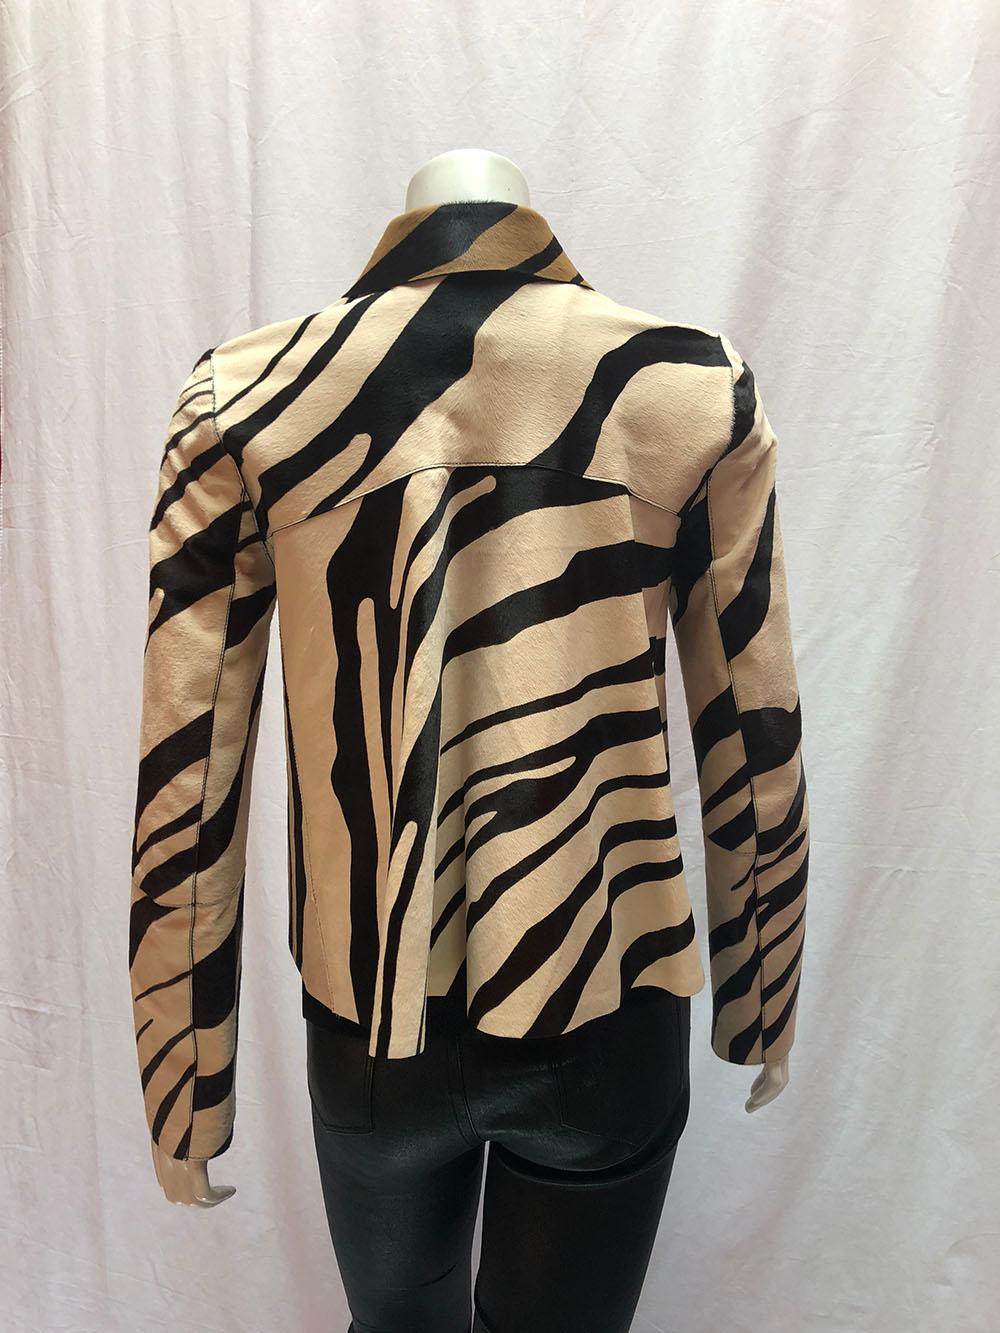 giraffe print jacket